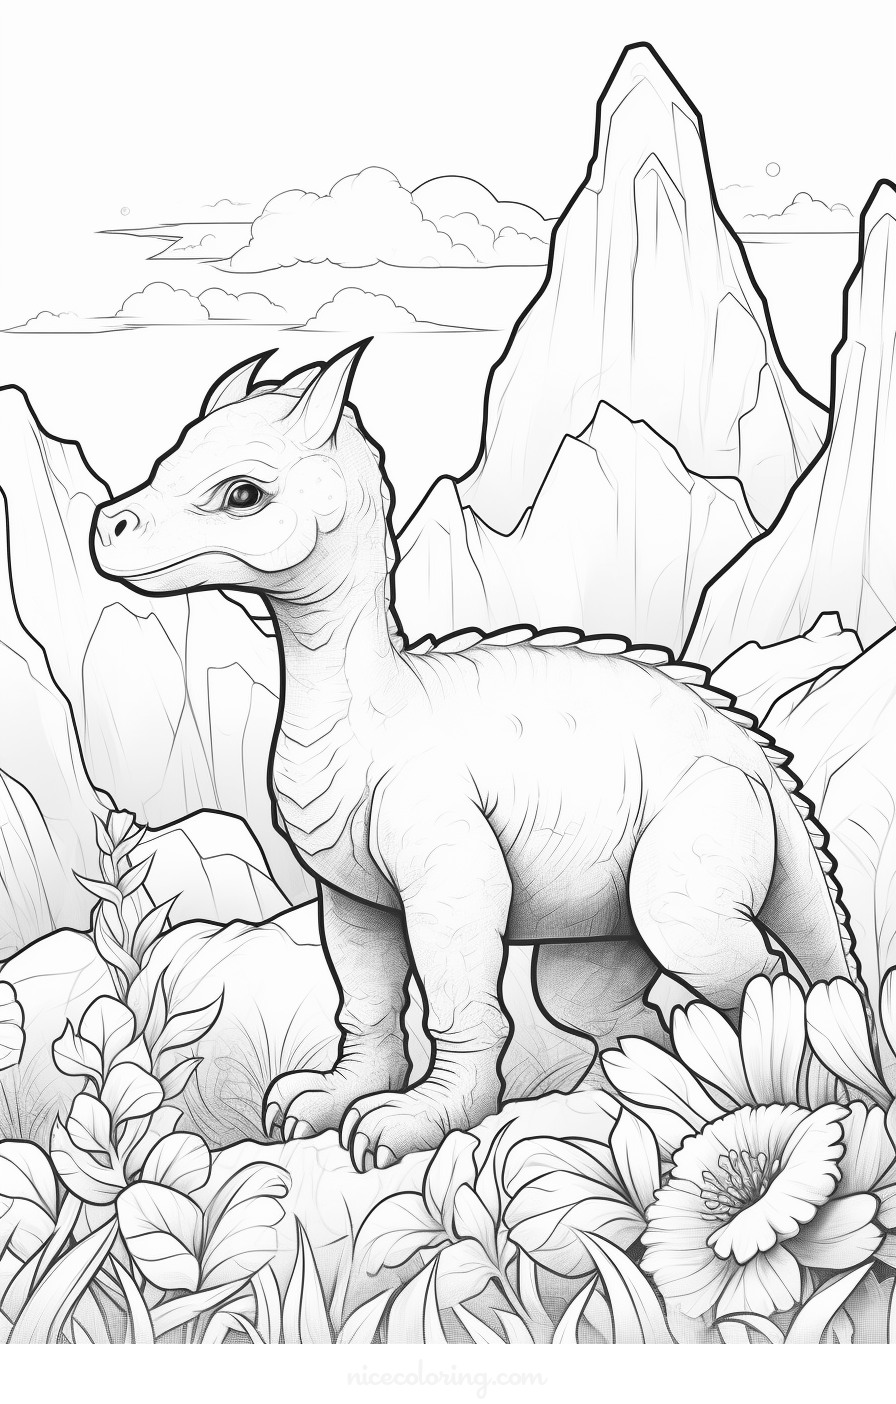 Dinosaurio en un paisaje prehistórico para colorear